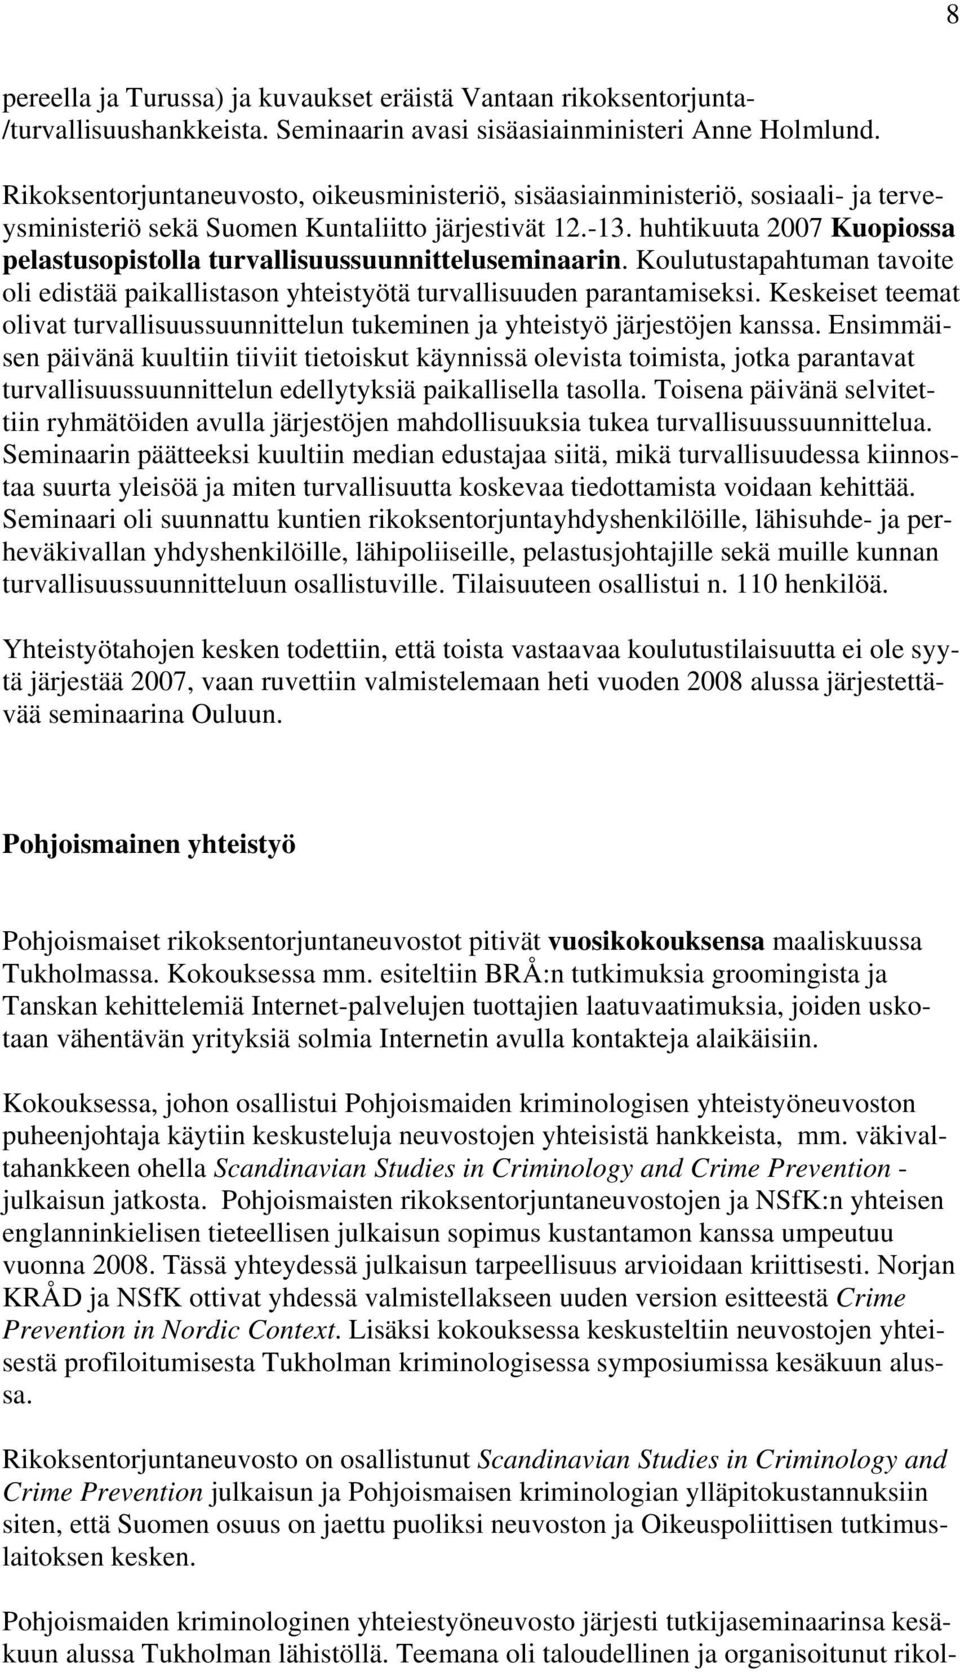 huhtikuuta 2007 Kuopiossa pelastusopistolla turvallisuussuunnitteluseminaarin. Koulutustapahtuman tavoite oli edistää paikallistason yhteistyötä turvallisuuden parantamiseksi.